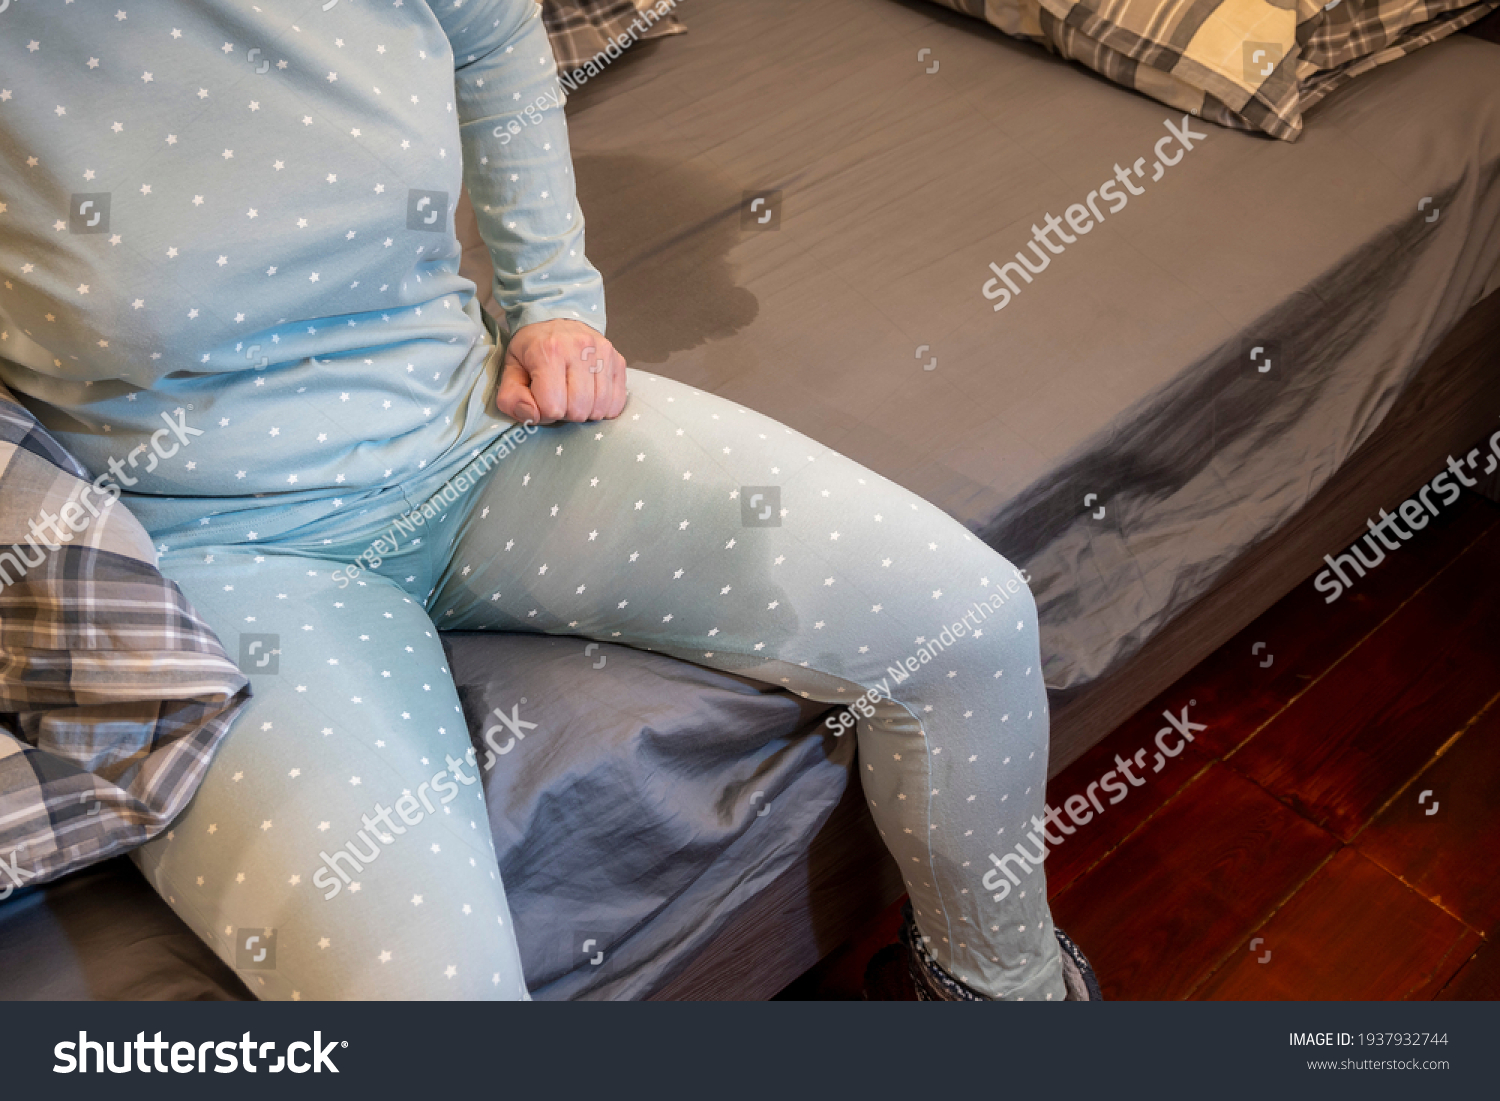 ベッドの端には、濡れたパジャマを着た女性が座る。 グレーシートの濡れた染み。 失禁。 夜間性利尿による排尿行為の制御不能。 コンセプト。写真素材1937932744 Shutterstock